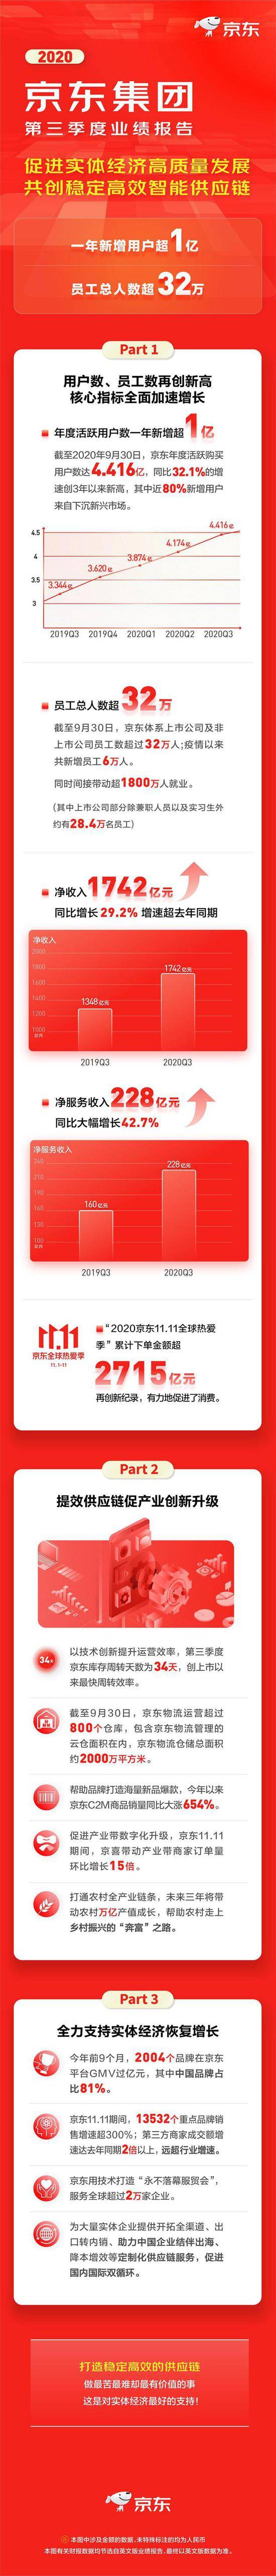 京东第三季度净利润56亿元人民币 同比增长80.1%